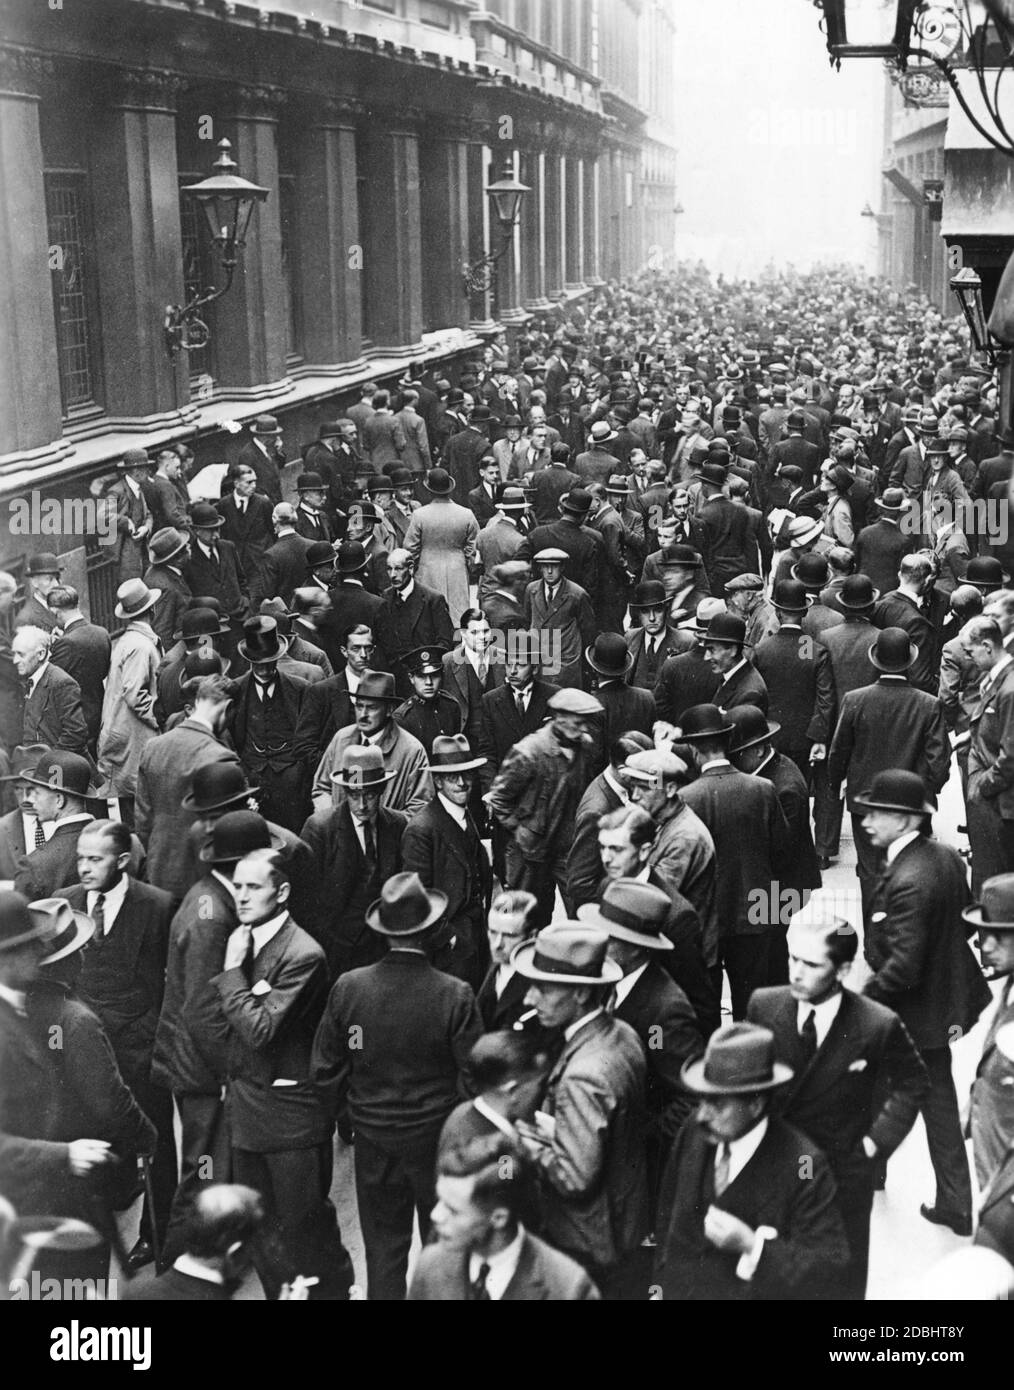 Una grande folla si è riunita a Londra di fronte alla borsa il 21 settembre 1931. Il governo inglese ha disaccoppiato il tasso di cambio della sterlina britannica dal precedente standard aureo valido, che ha causato la caduta dei prezzi. Foto Stock